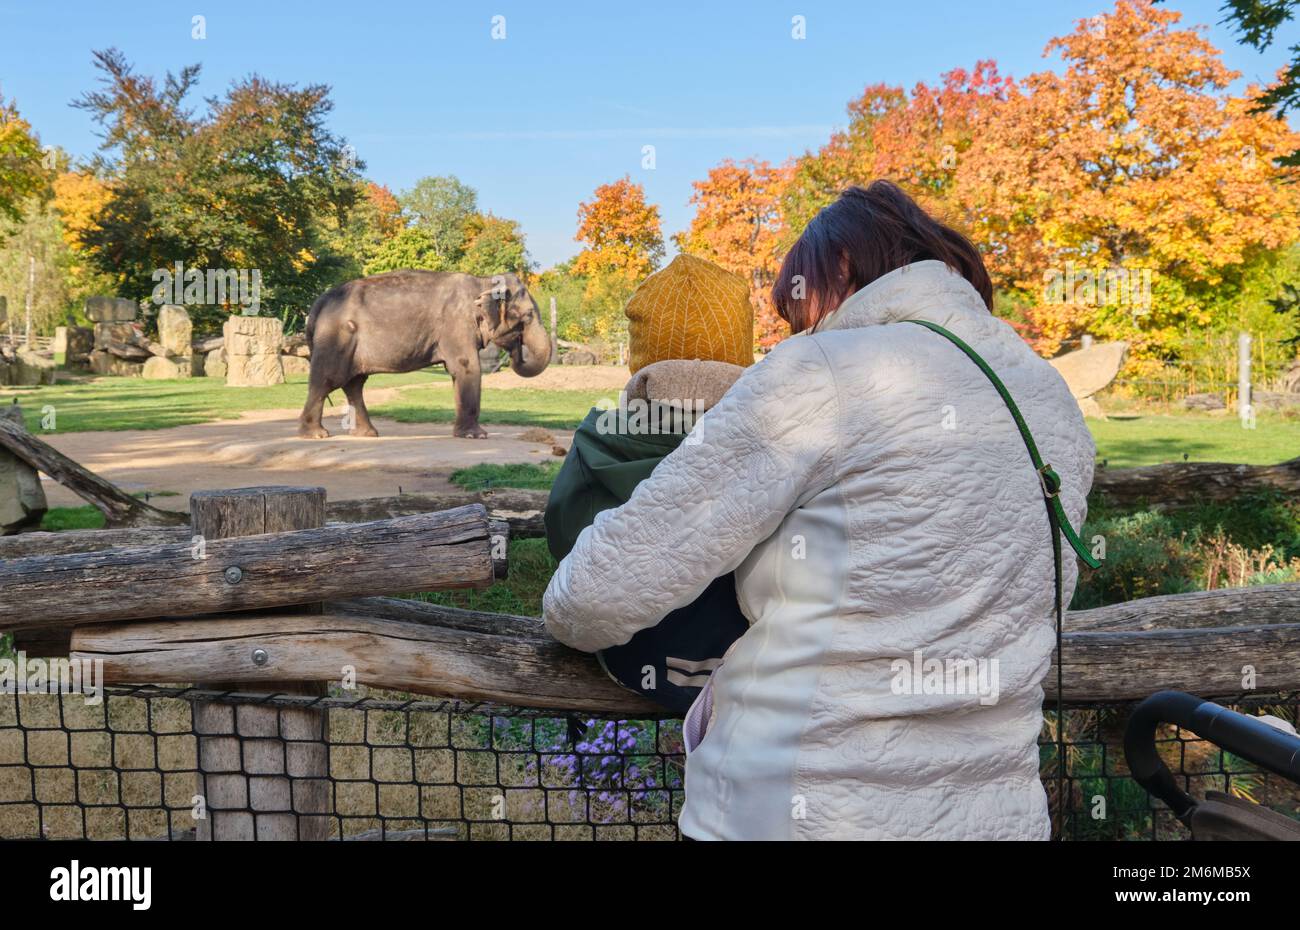 banksy elephant zoo